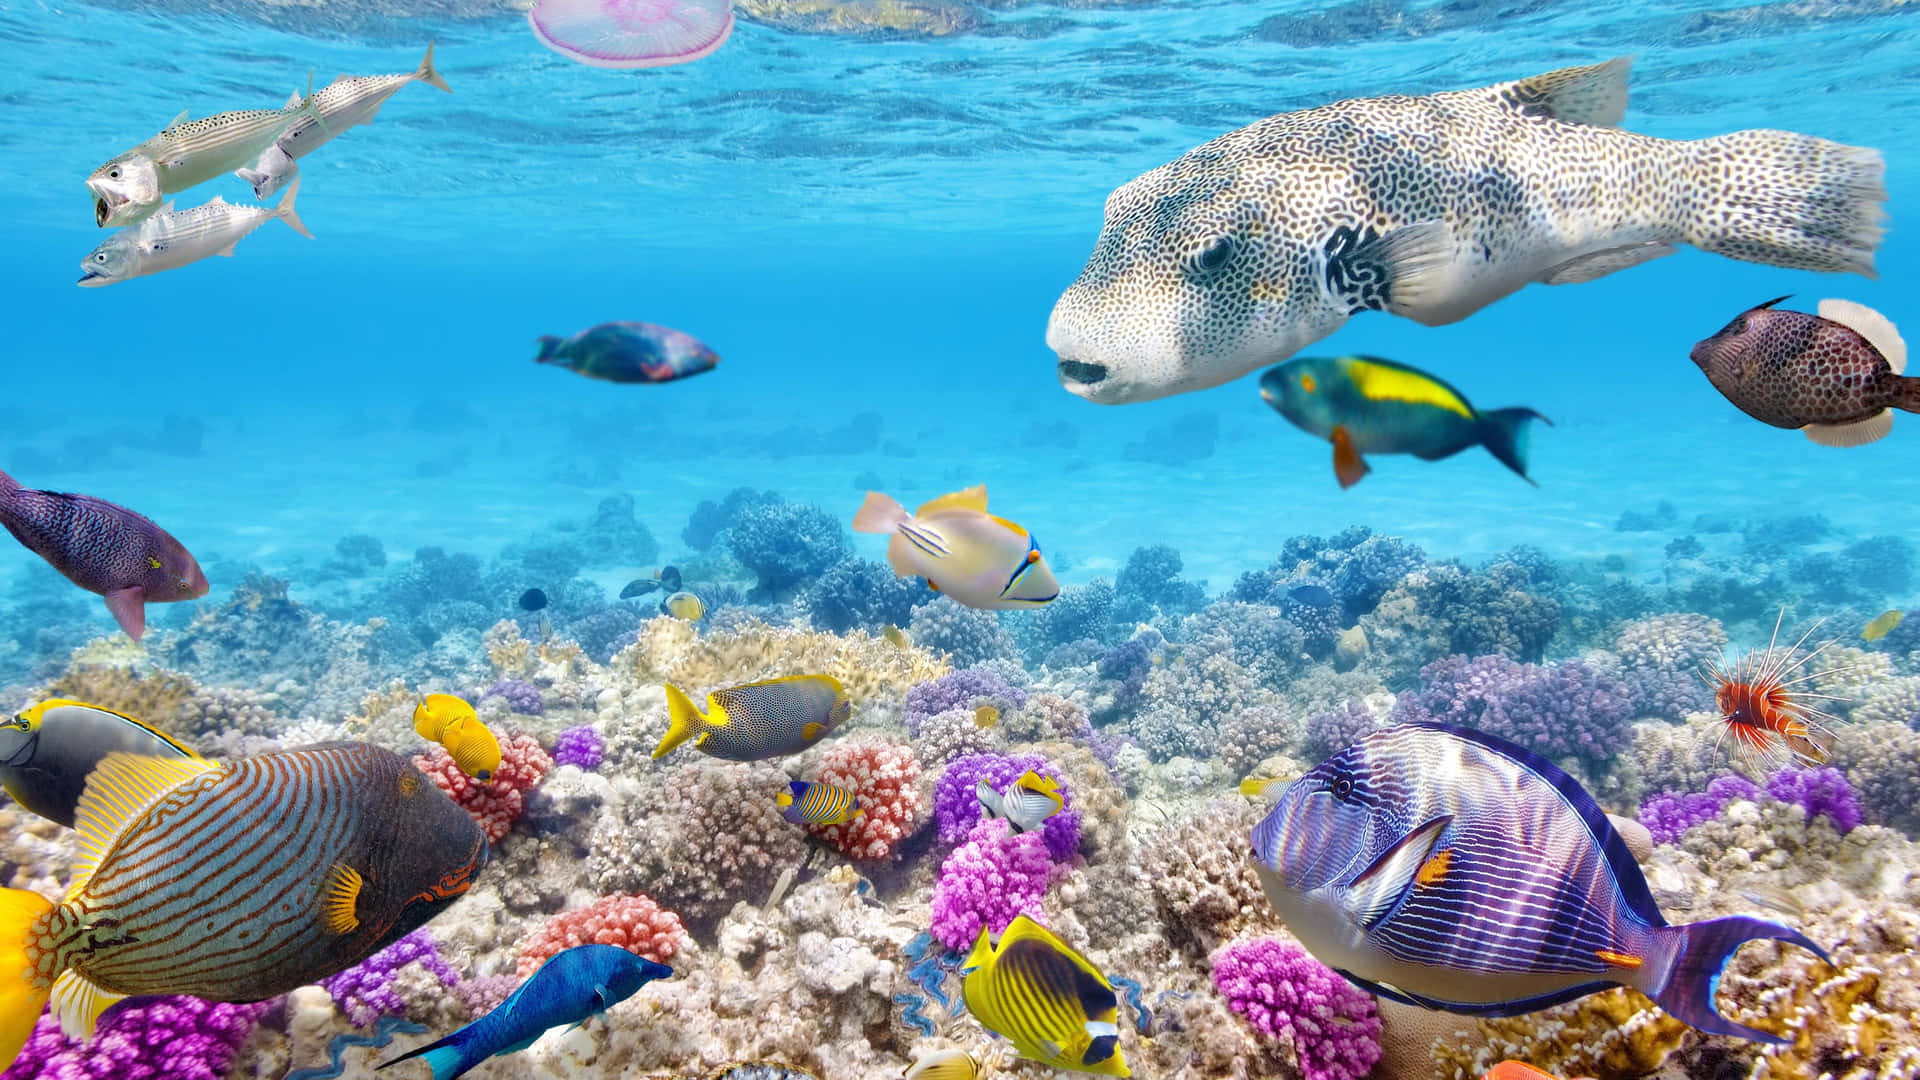 En omfattende vifte af liv set under vand i det smukke koralrev.